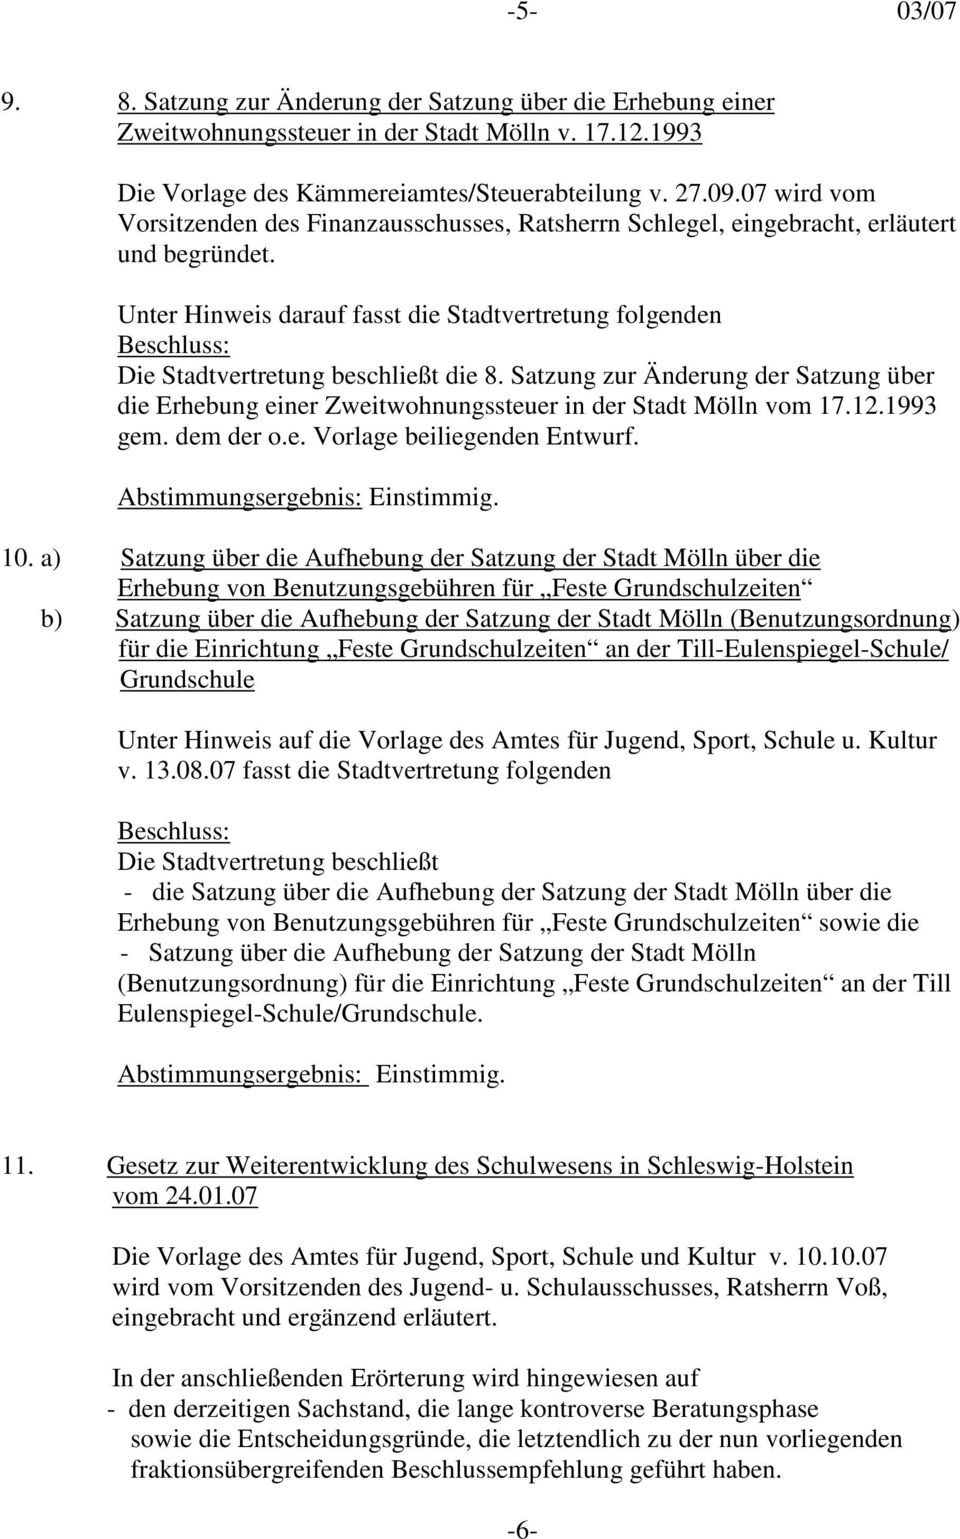 Satzung zur Änderung der Satzung über die Erhebung einer Zweitwohnungssteuer in der Stadt Mölln vom 17.12.1993 gem. dem der o.e. Vorlage beiliegenden Entwurf. Abstimmungsergebnis: Einstimmig. 10.